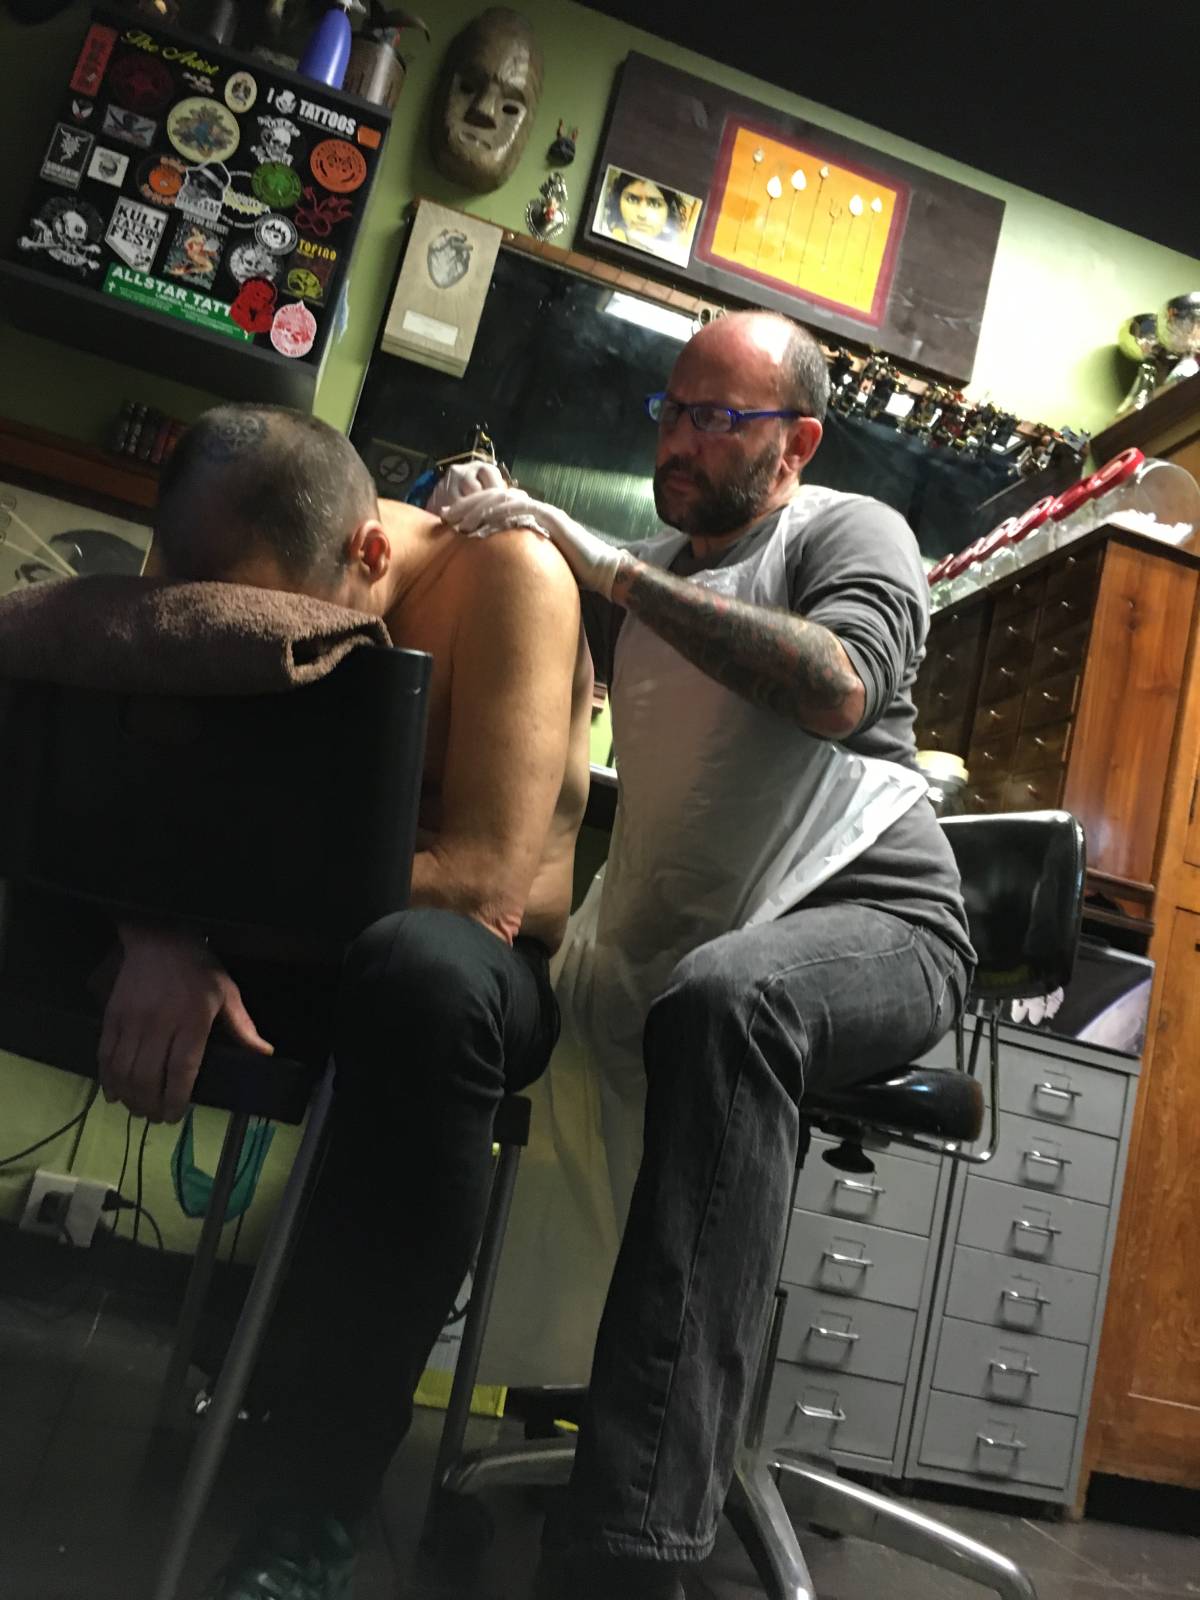 Marco Ruffa, l'anarchico dei tatuaggi: "Serve più cultura e romanticismo"